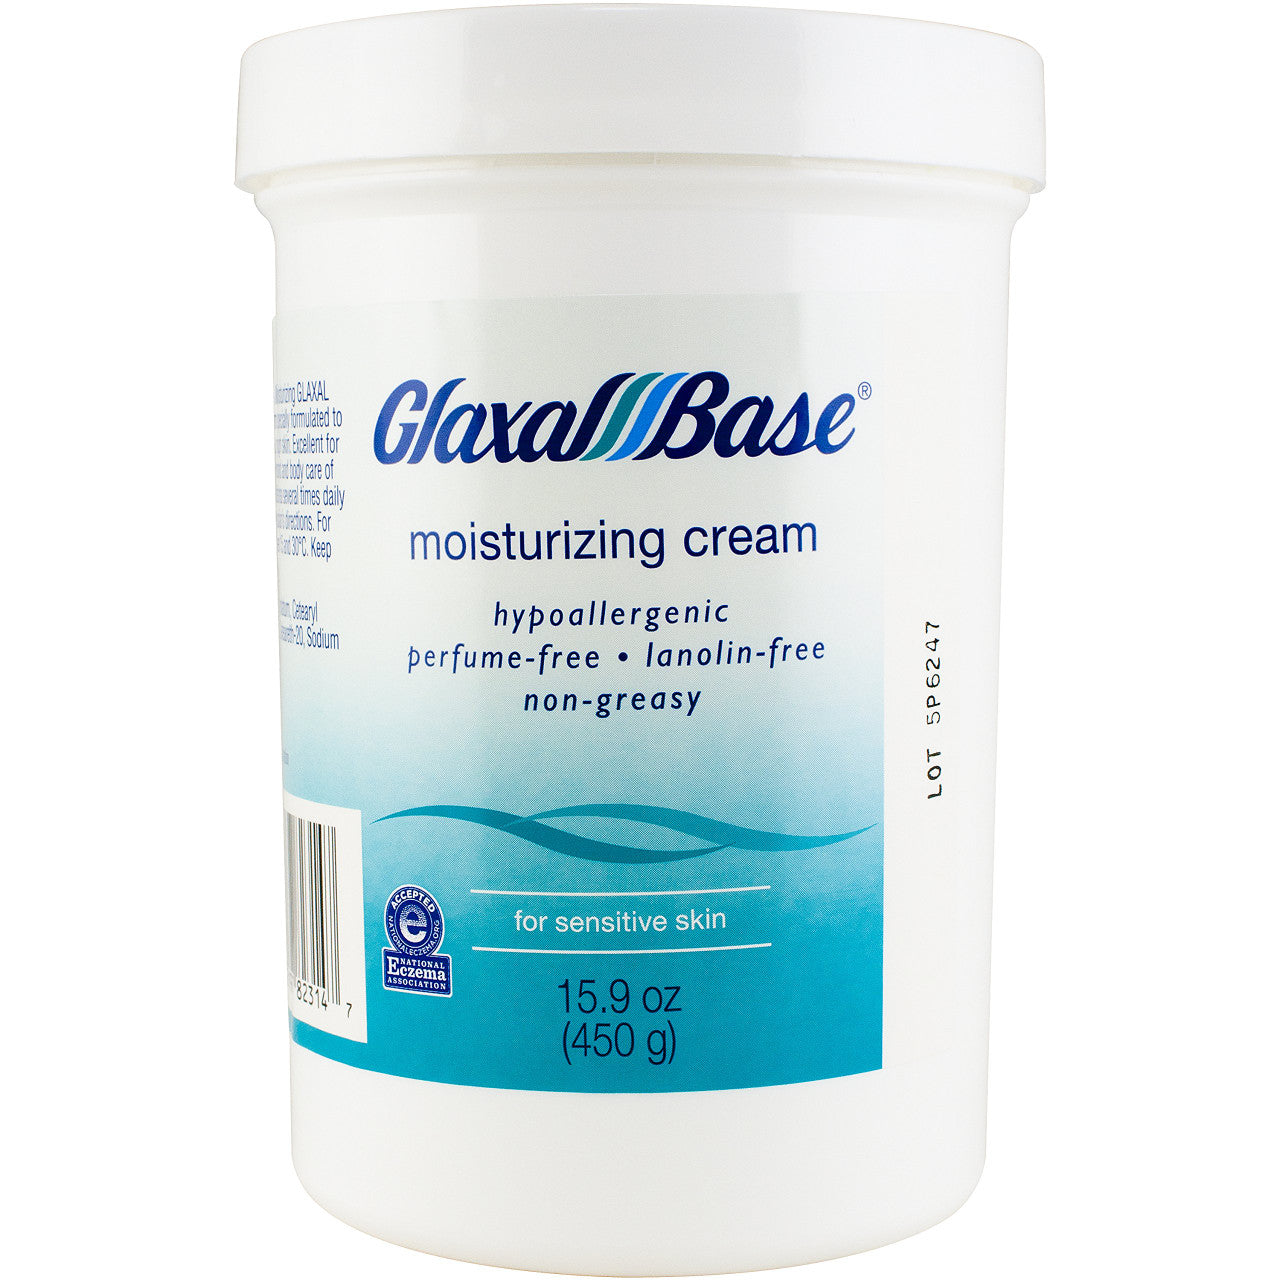 Glaxal Base Moisturizing Cream - 450g (15.9 Oz) Large Size, {Imported from Canada}